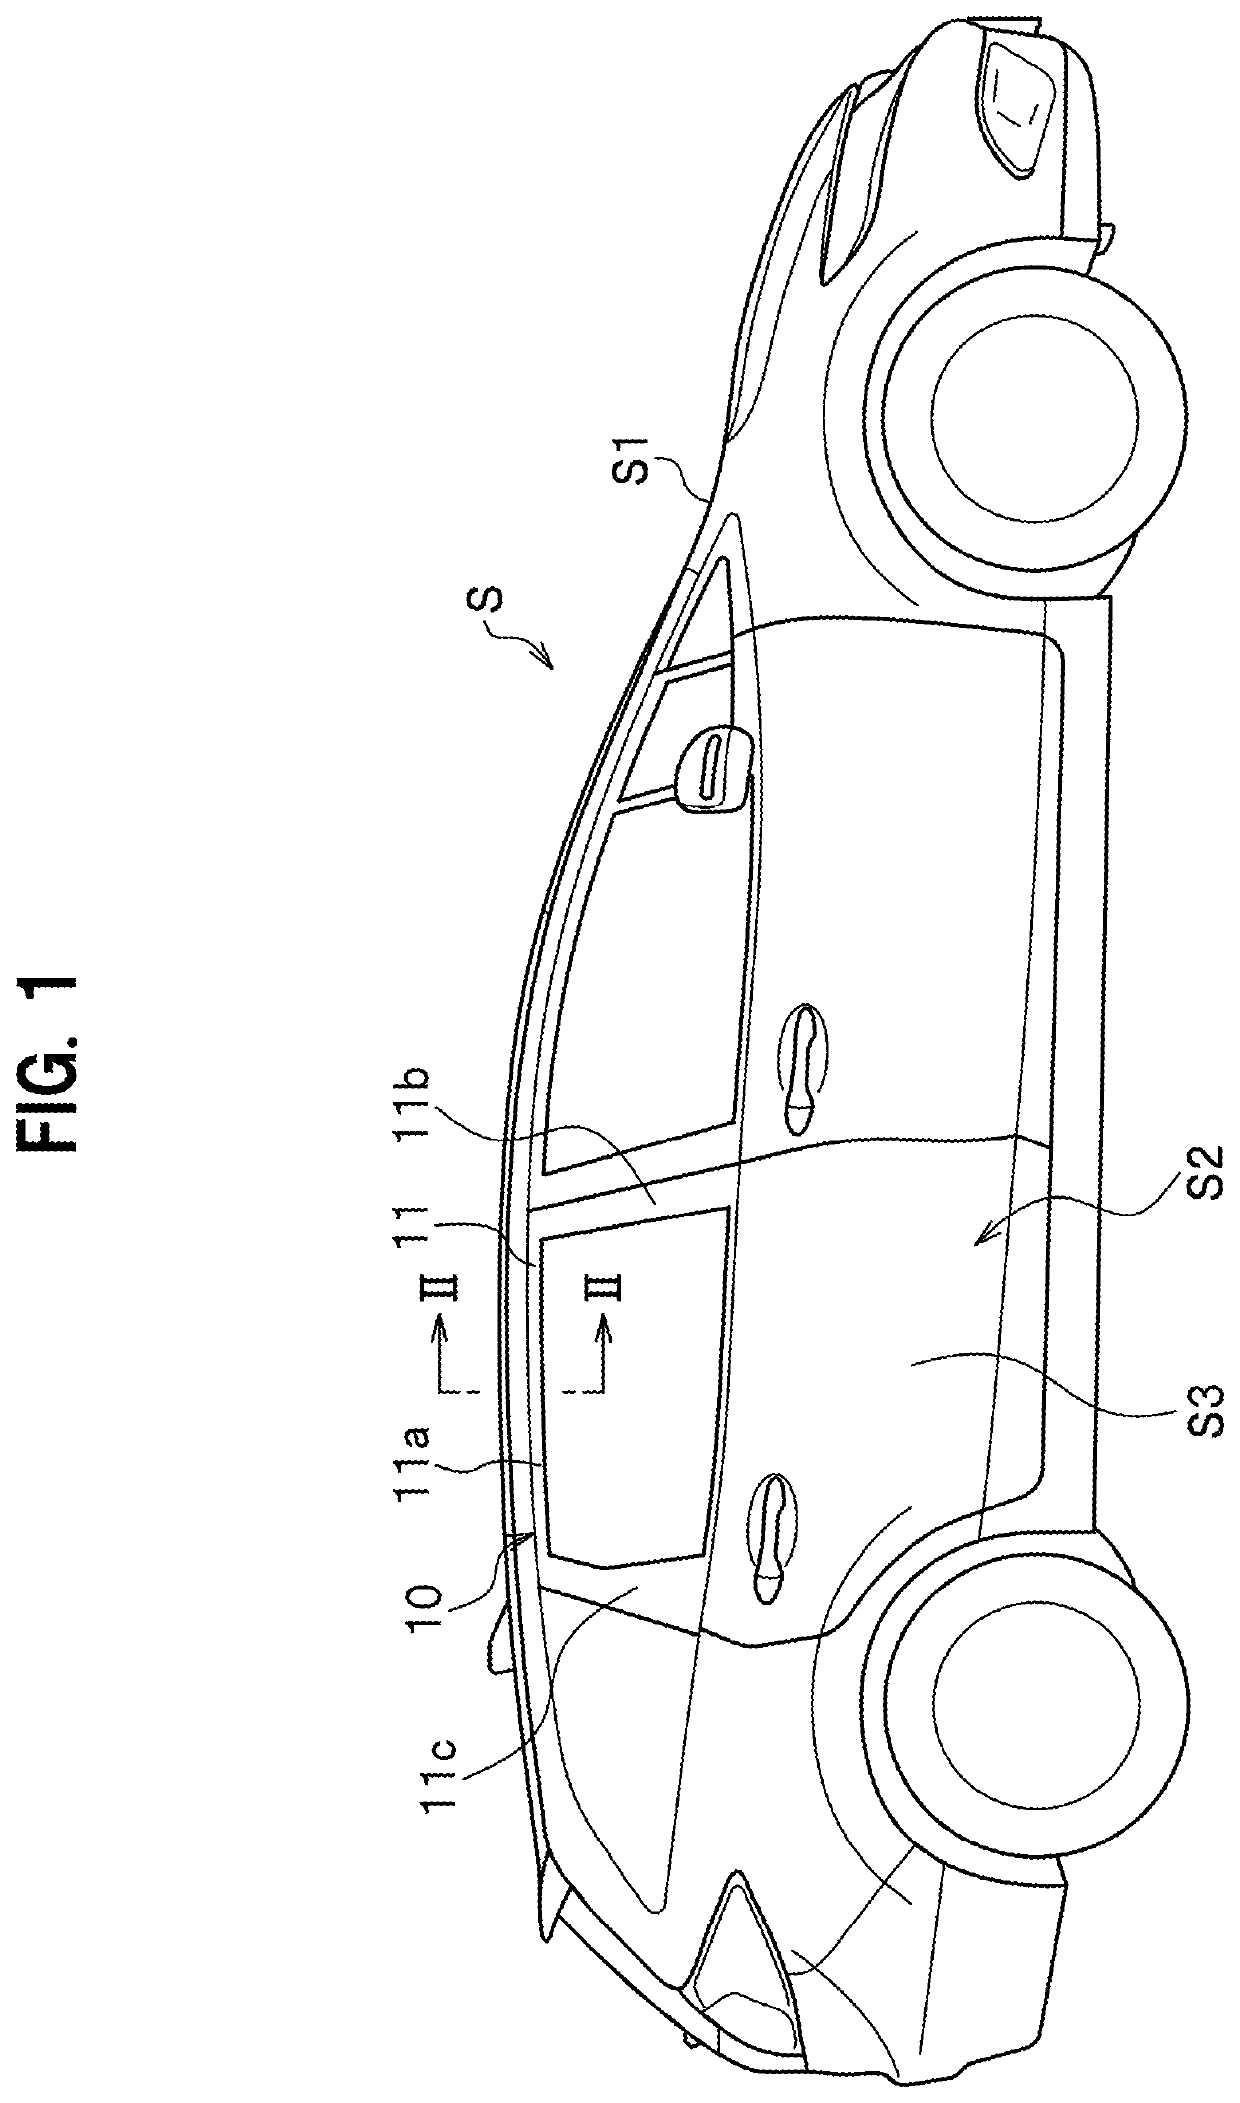 Vehicle door sash structure